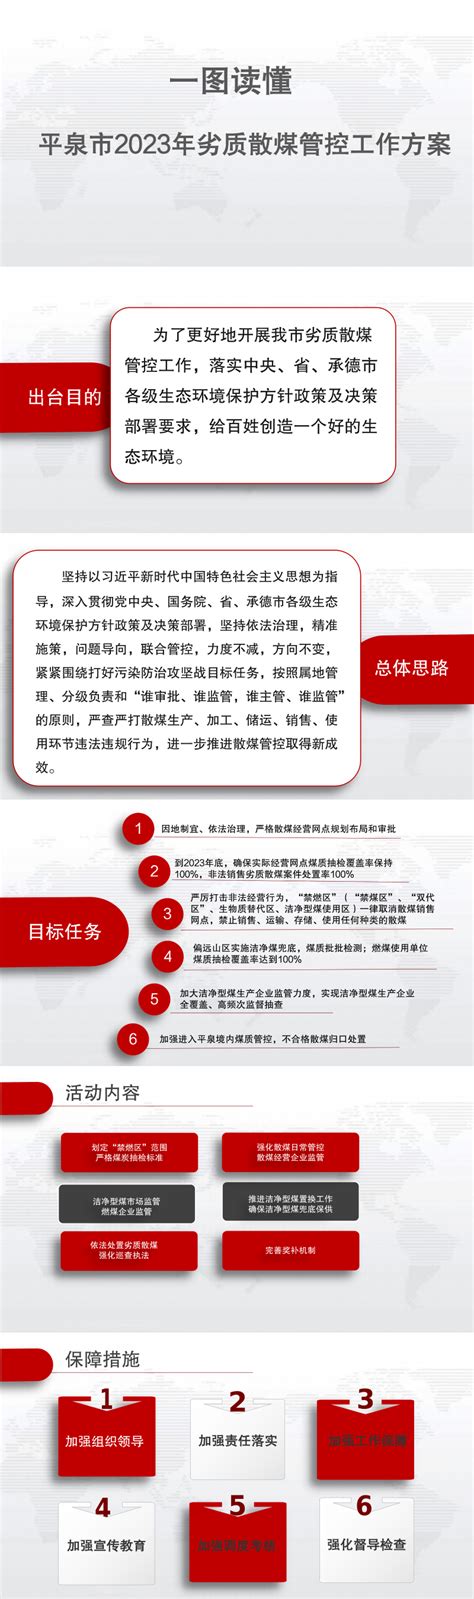 平泉市人民政府 部门工作 平泉市交通建设发展中心对北京鑫旺路桥承建的八家隧道以及其他在建项目开展了“五一节前安全生产隐患排查整治”活动